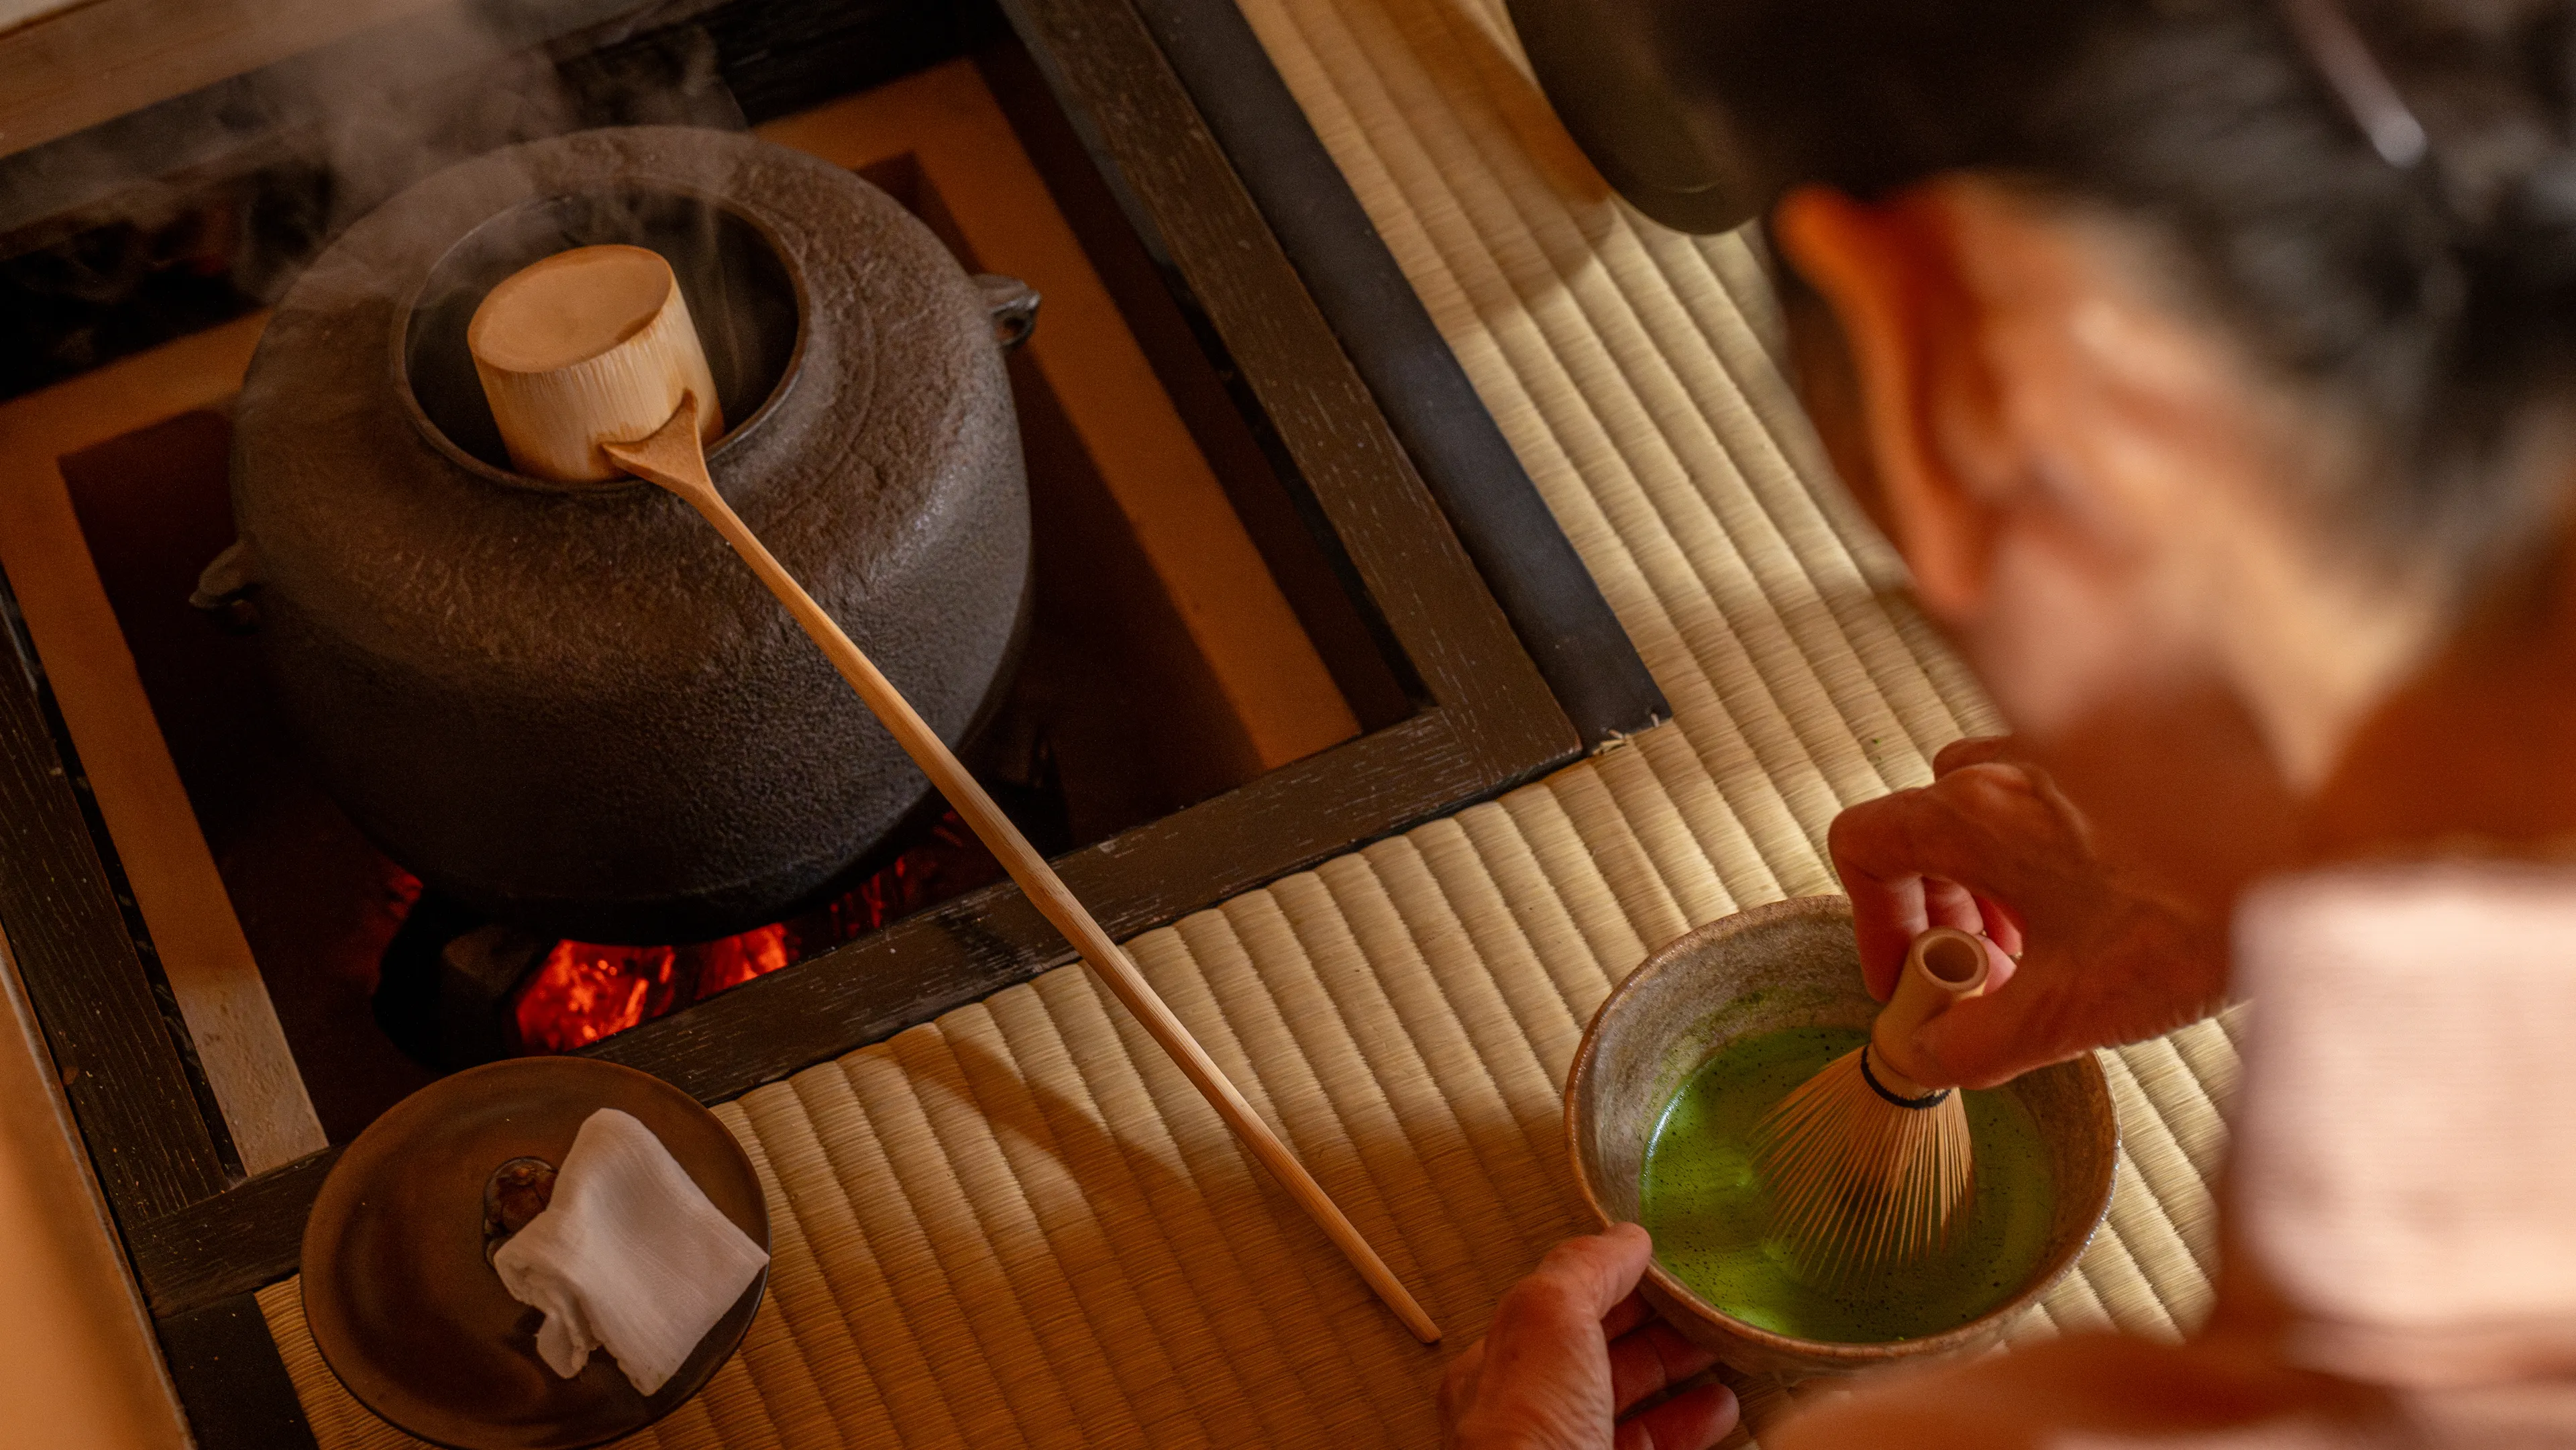 สัมผัสประสบการณ์แก่นแท้ของจิตวิญญาณญี่ปุ่นผ่านพิธีชงชา หัวใจของการต้อนรับแบบญี่ปุ่น